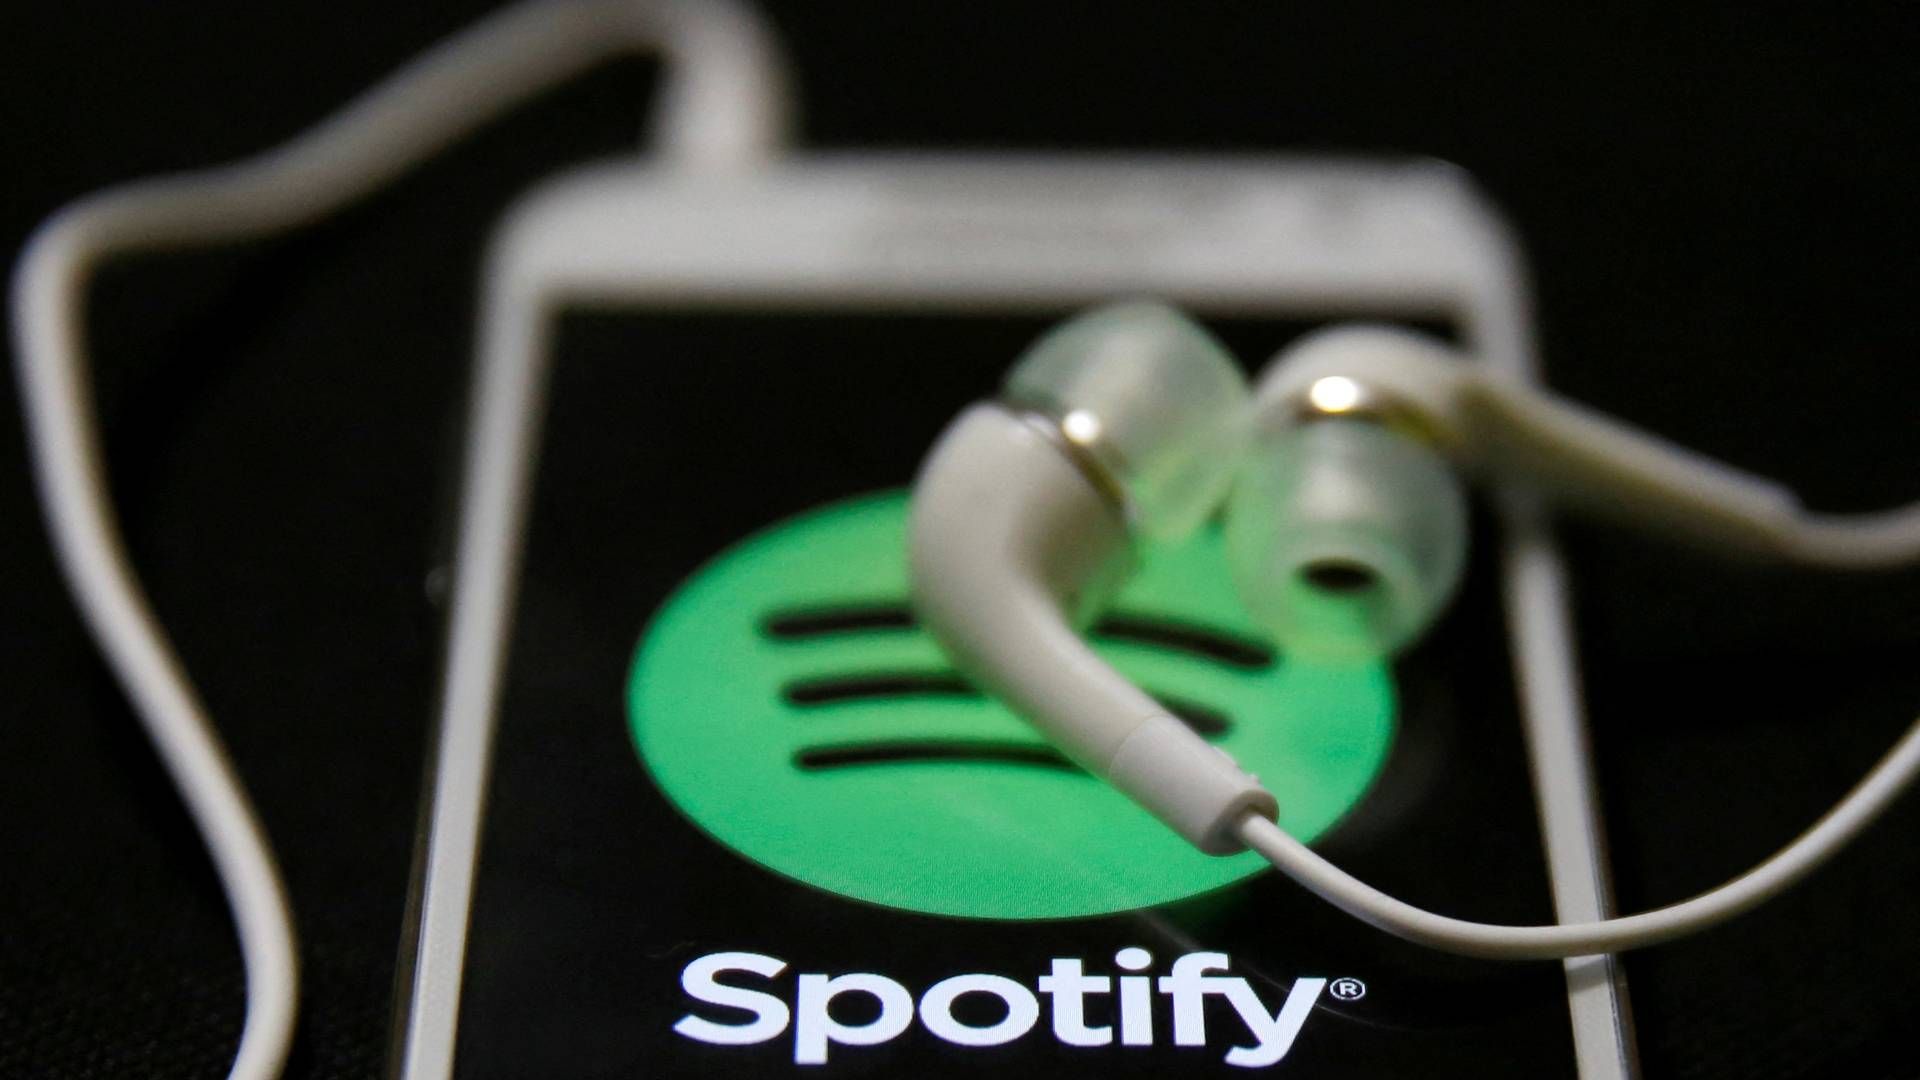 Svenske Spotify skal ud i en ny sparerunde. Det kommer til at betyde fyringer for tredje gang i år. | Foto: Dado Ruvic/Reuters/Ritzau Scanpix